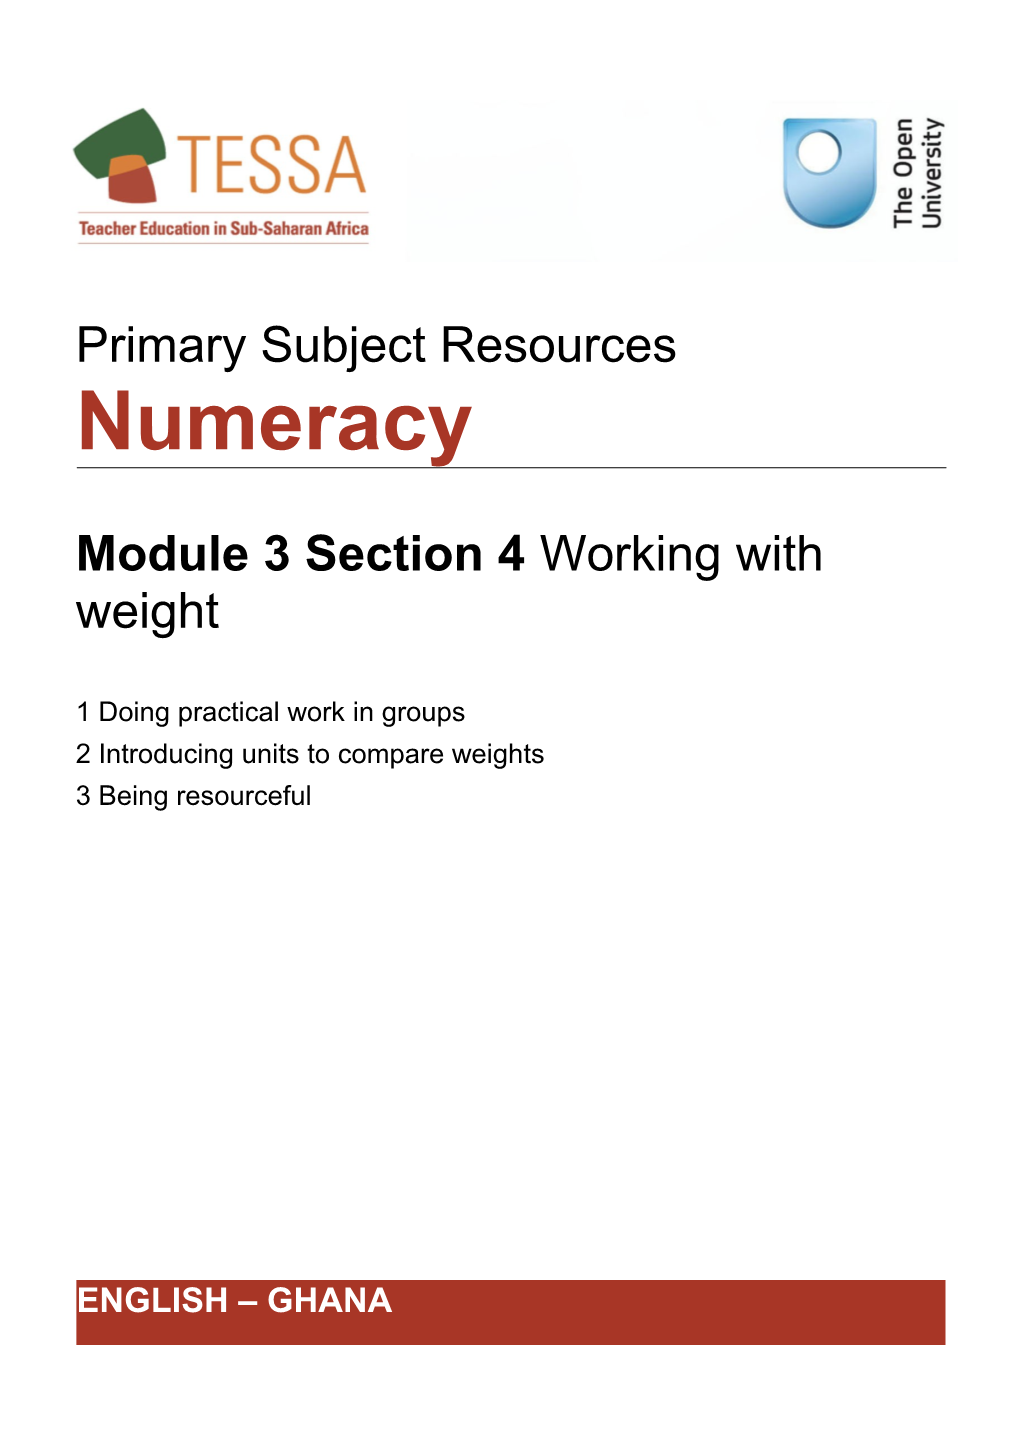 Module 3: Exploring Measurement and Data Handling